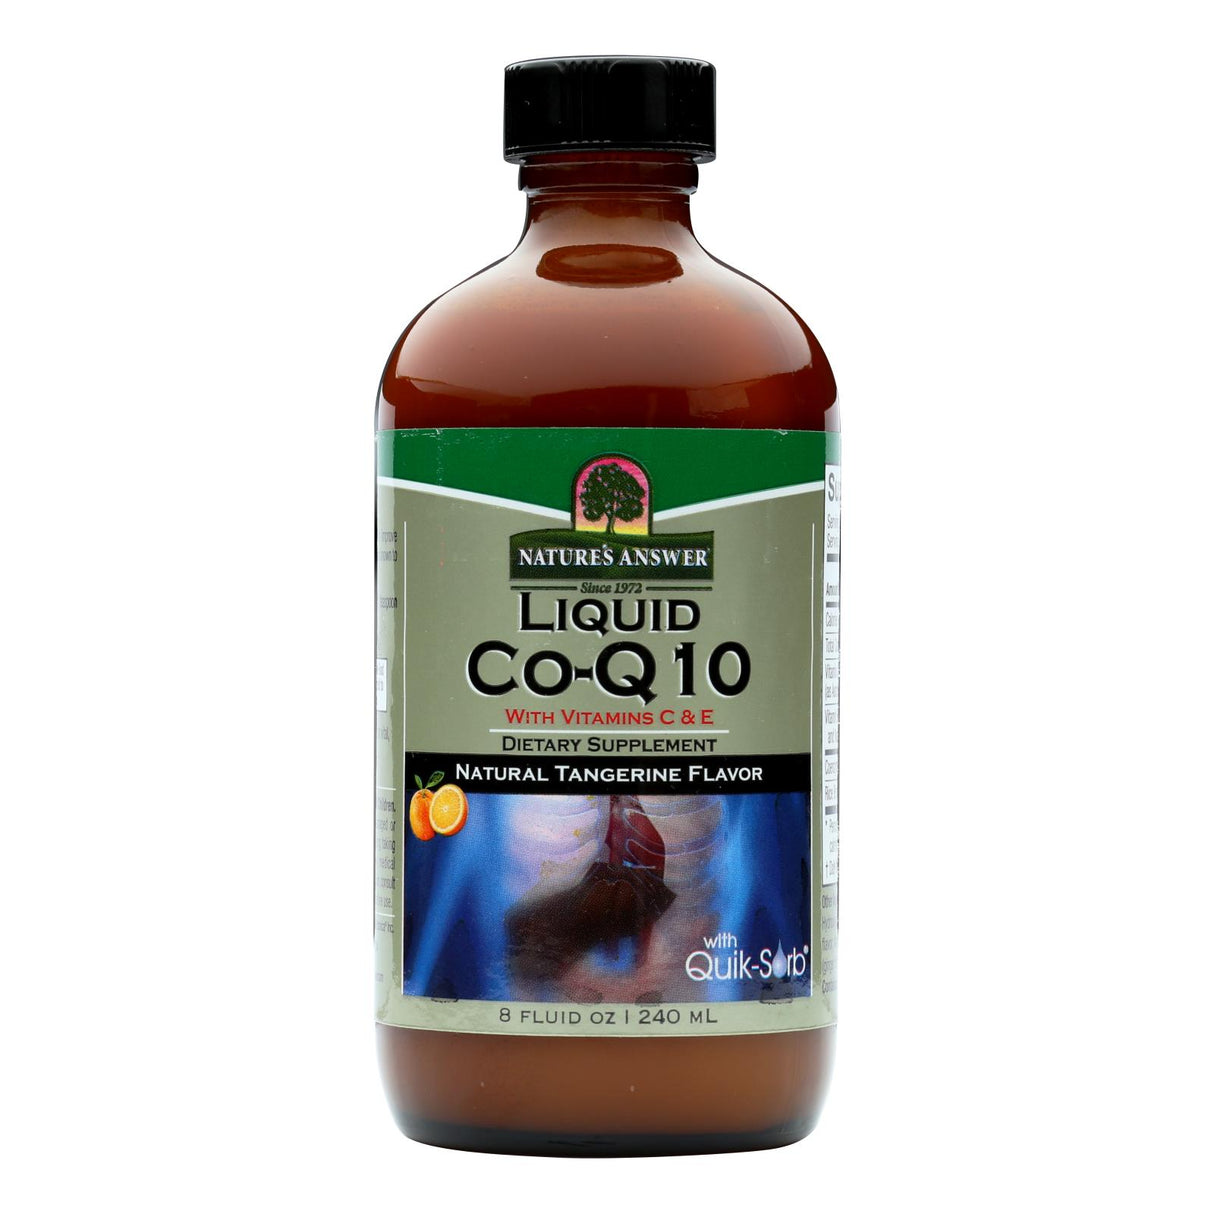 Nature's Answer - Liquid Coenzyme Q10 - Heart Health Support - 8 Fluid Ounces - Cozy Farm 